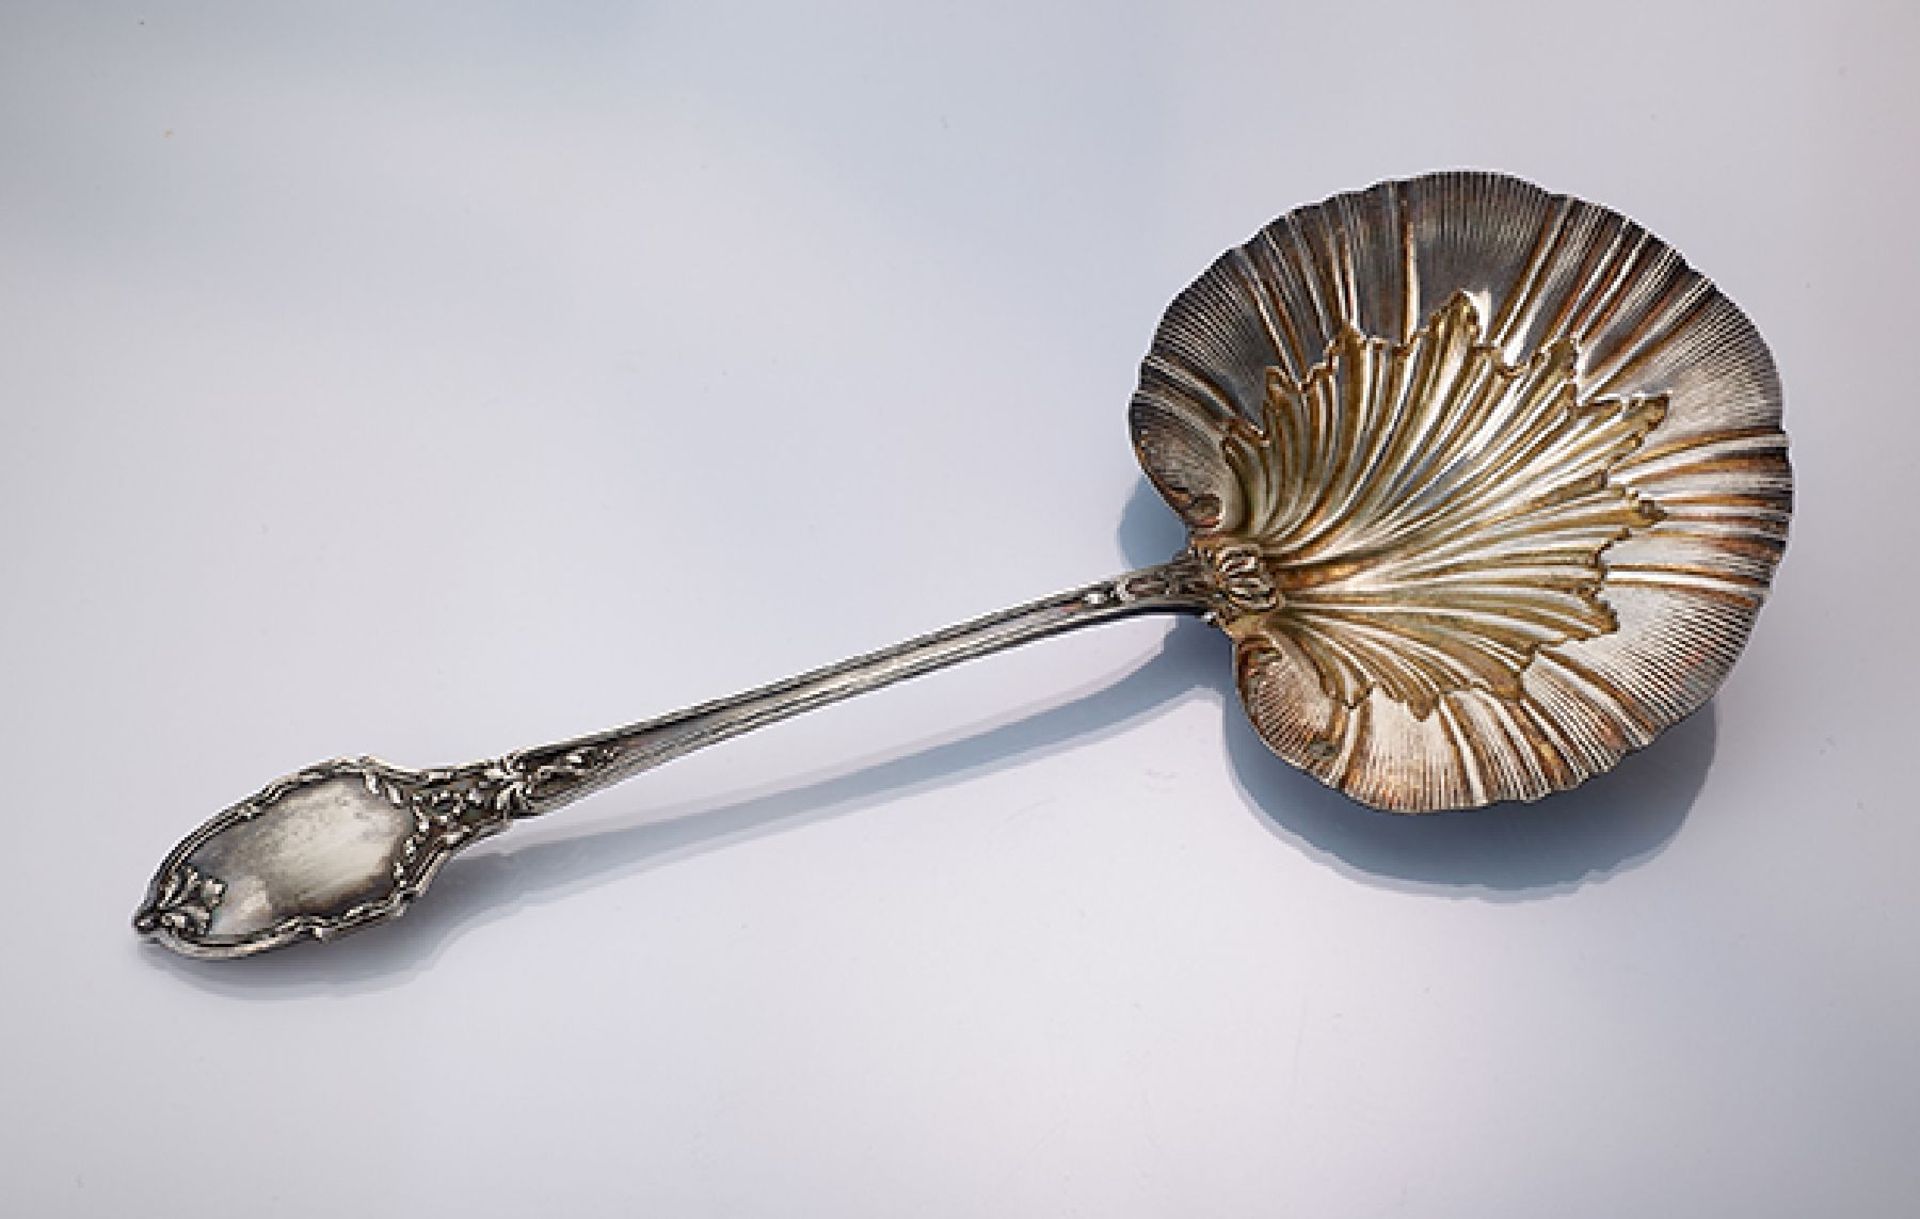 Vorlegelöffel/Erdbeerlöffel, Frankreich um 1890/1900, 950er Silber, Meistermarke OM, klassizistische